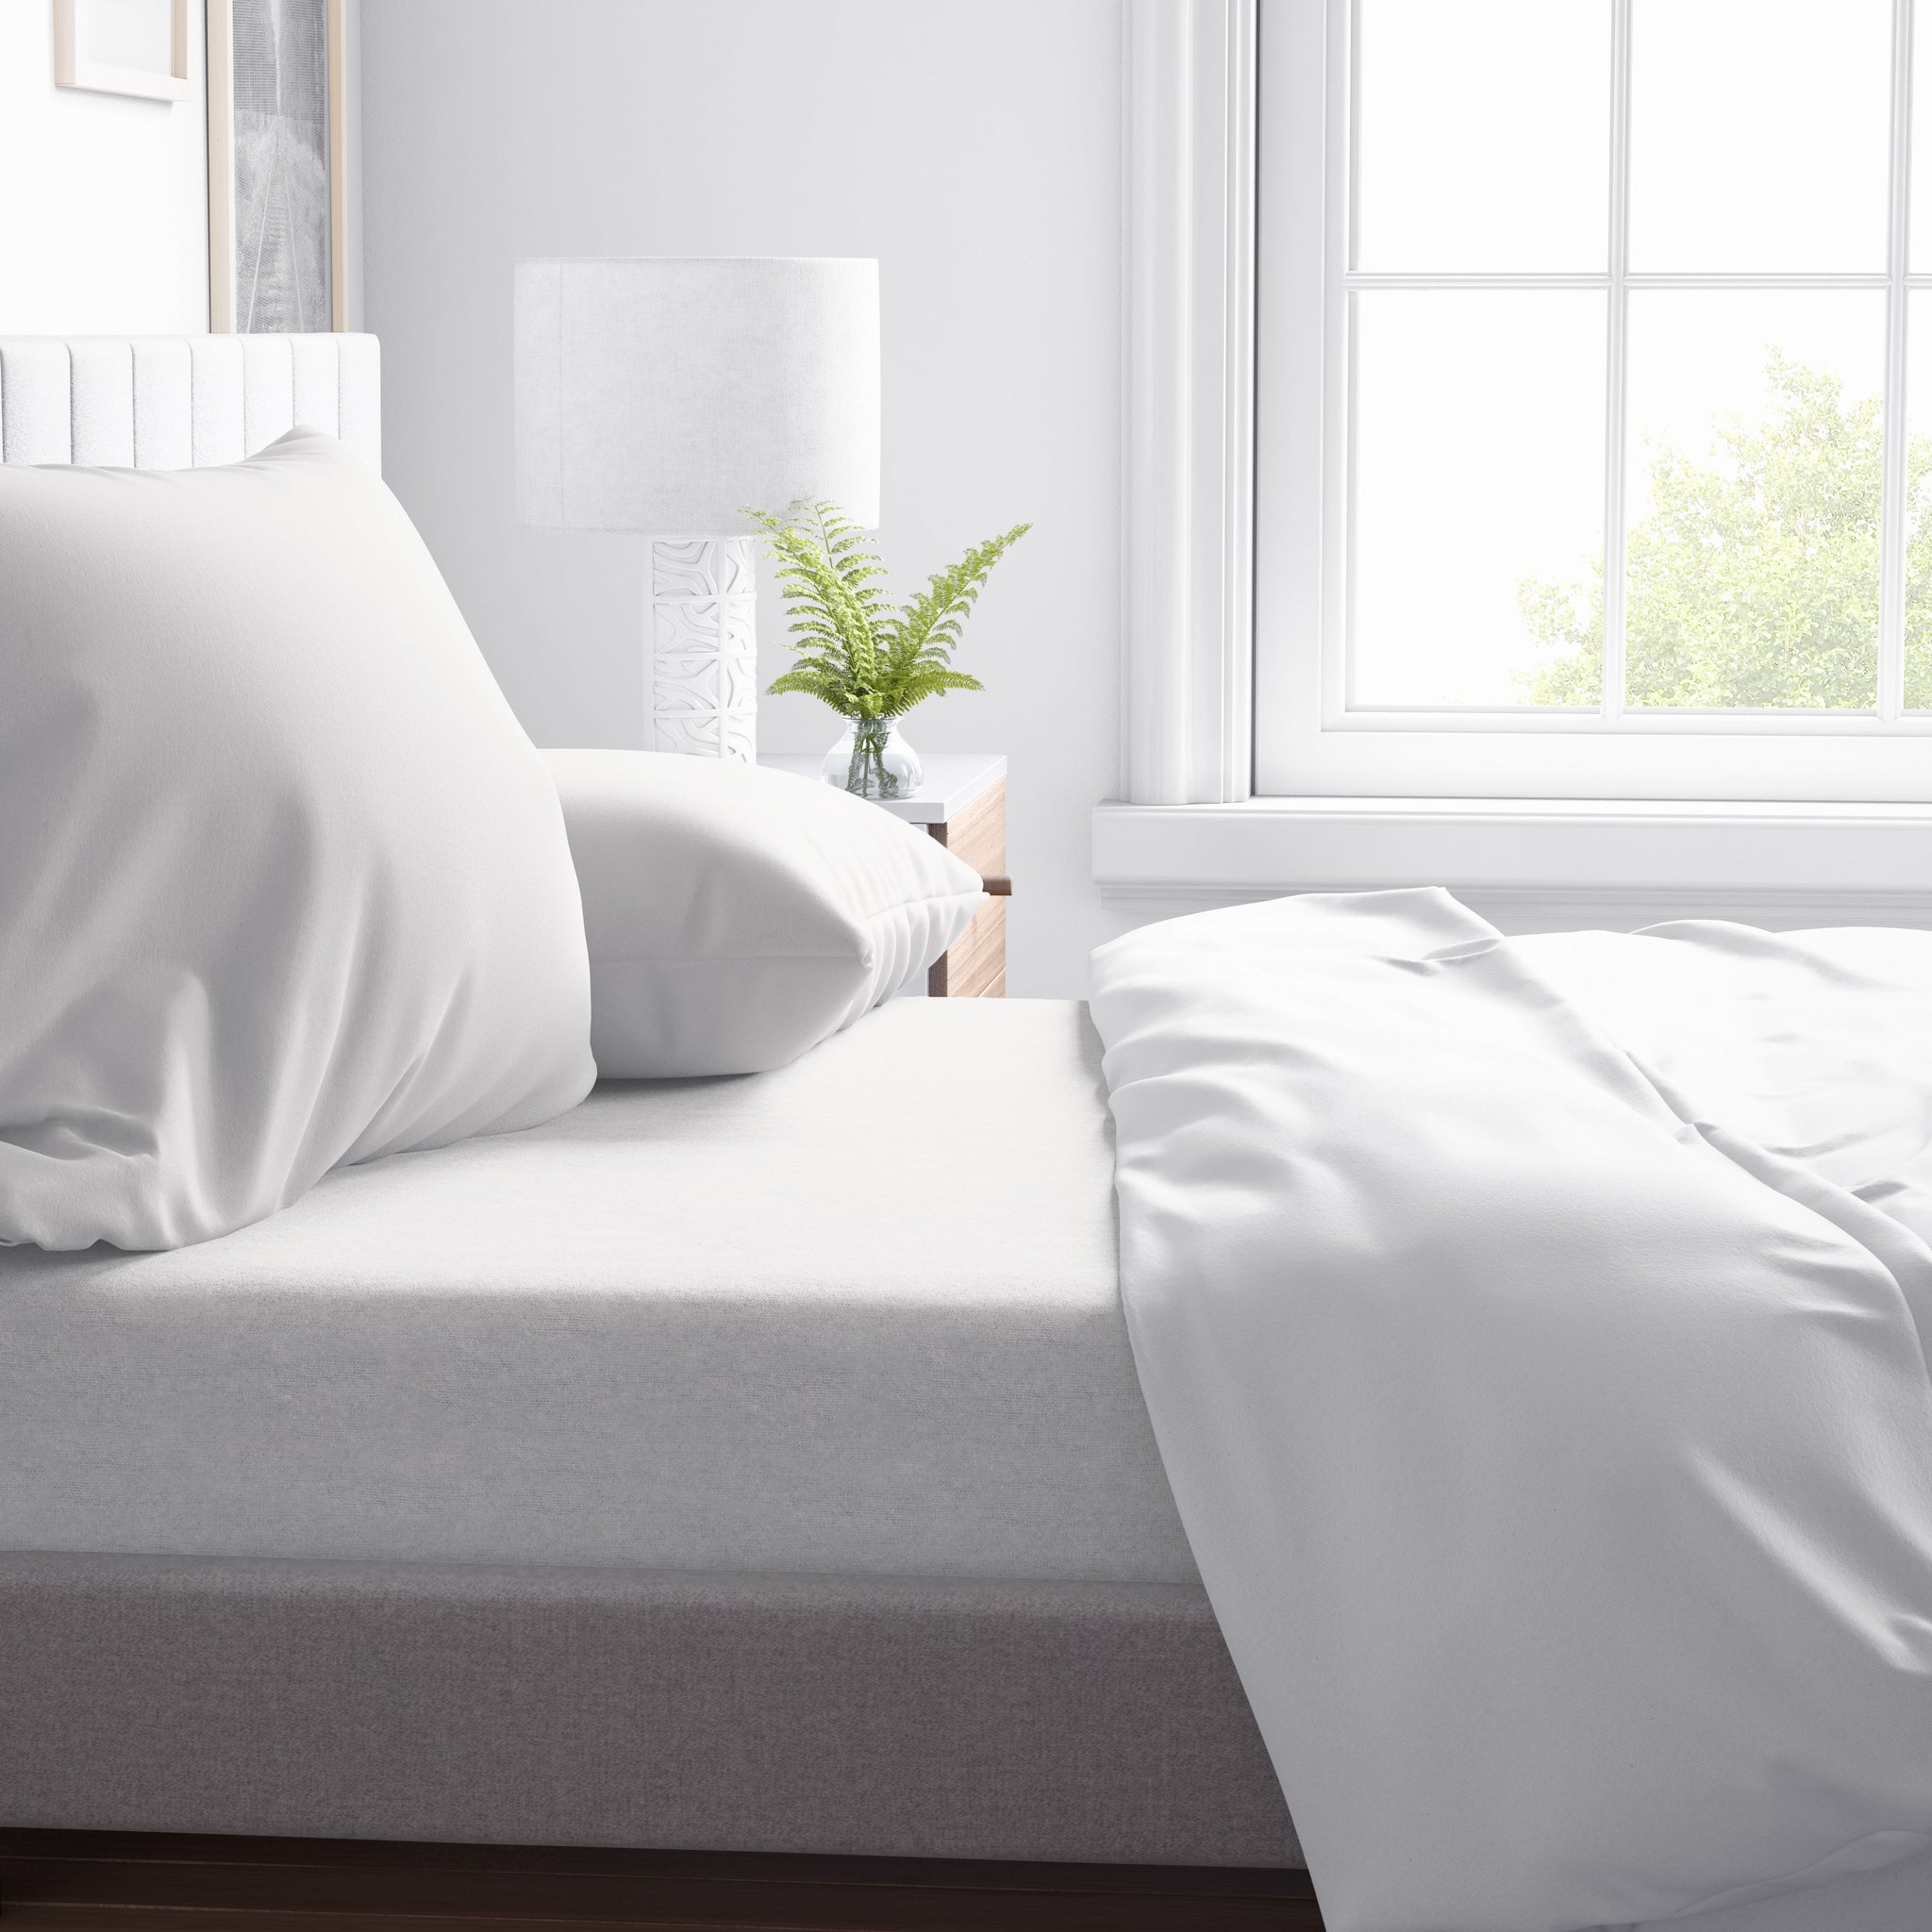 Flex Top King Sheets Sets for Adjustable Beds